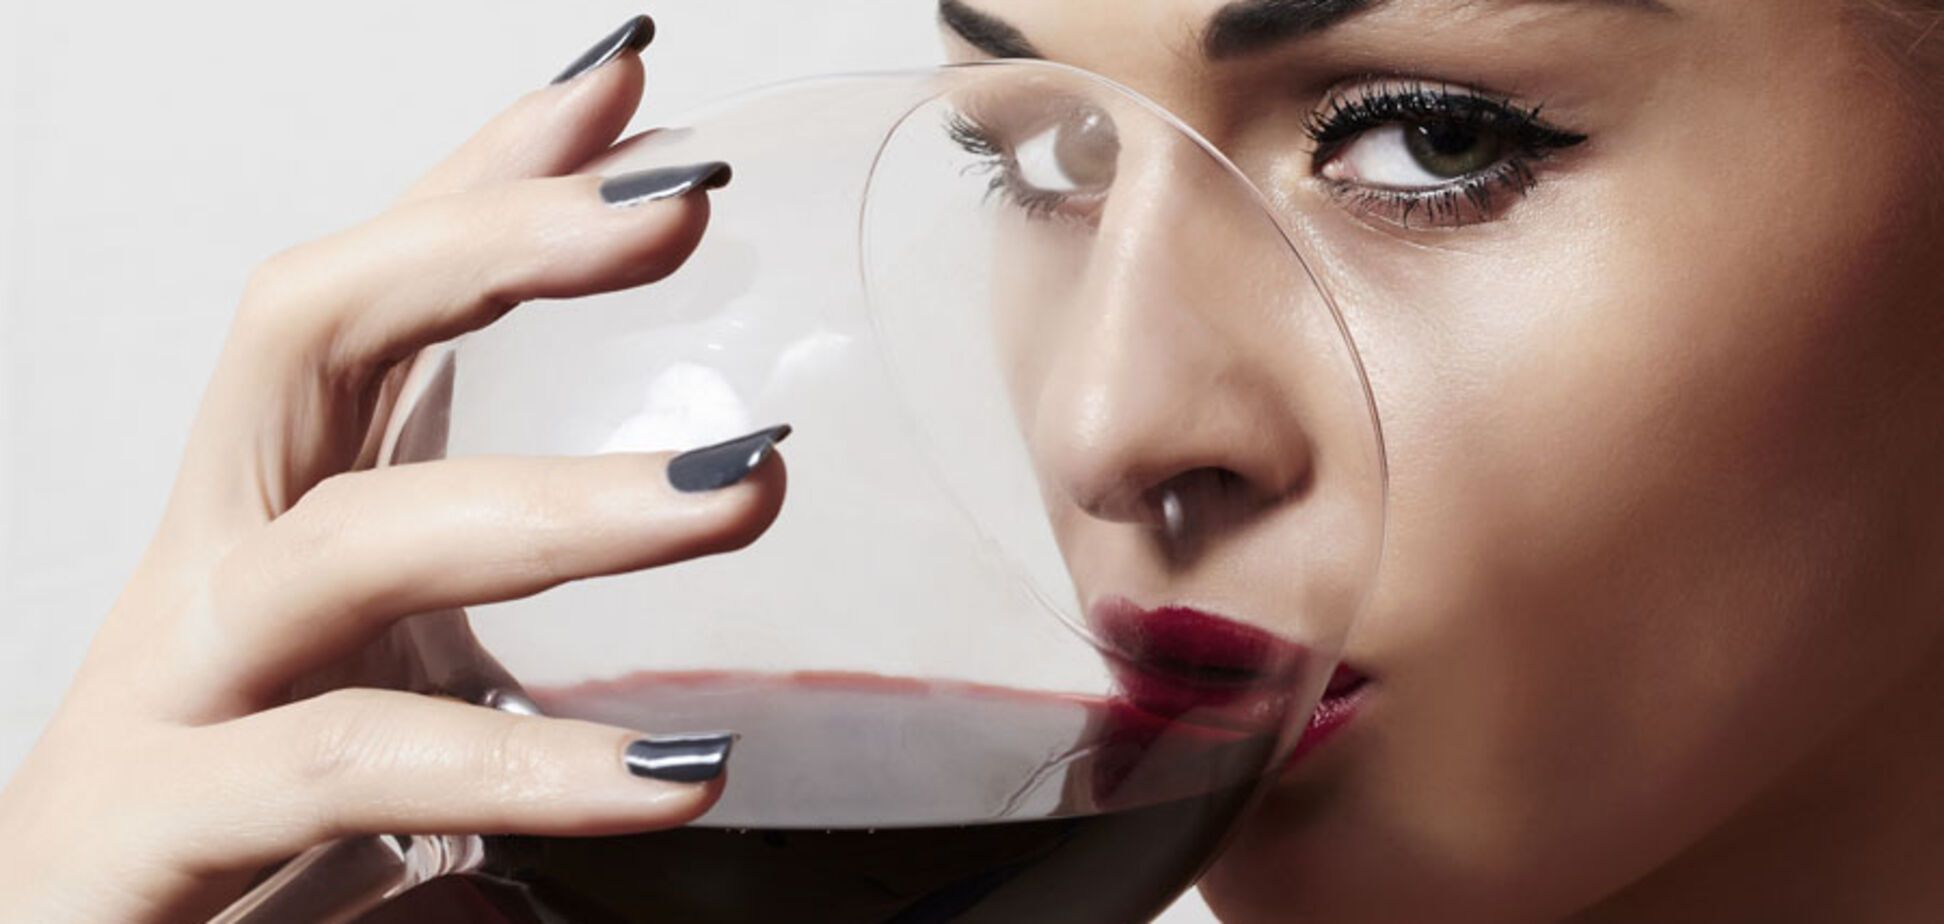 Не только вредно, но и калорийно: диетологи рассказали, сколько можно выпивать вина